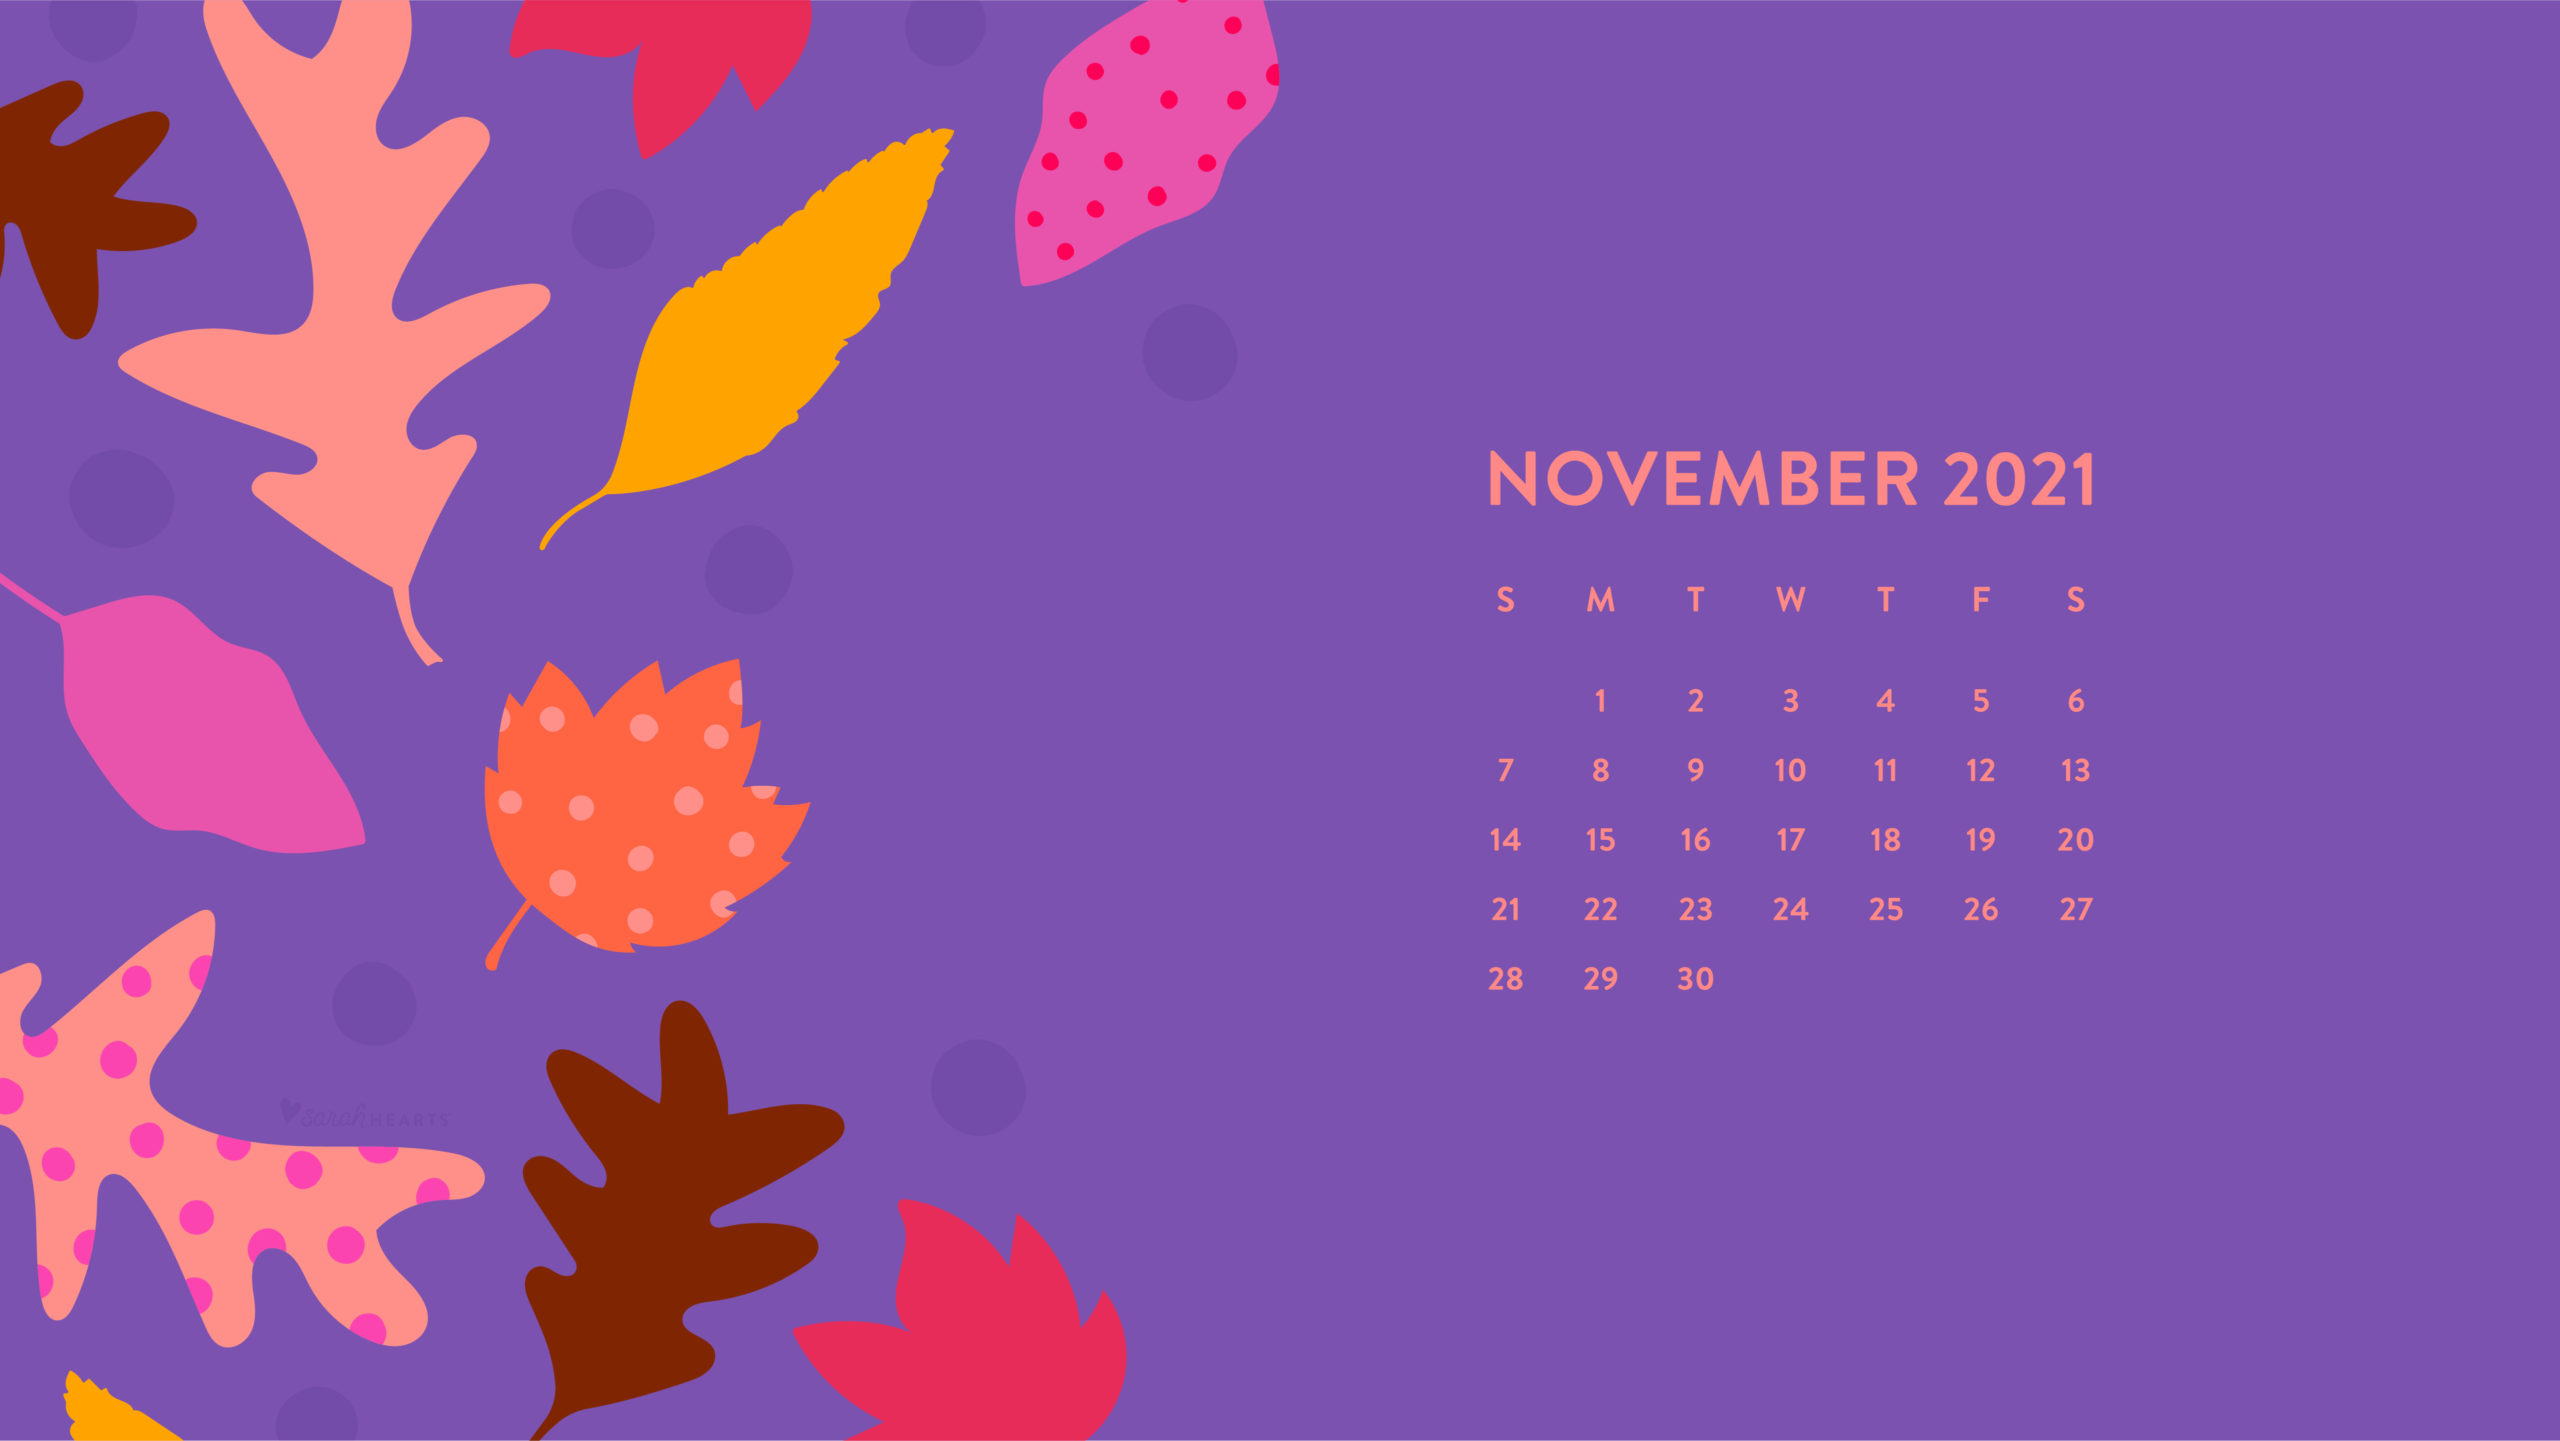 November 2022 wallpapers  59 FREE desktop  phone calendars